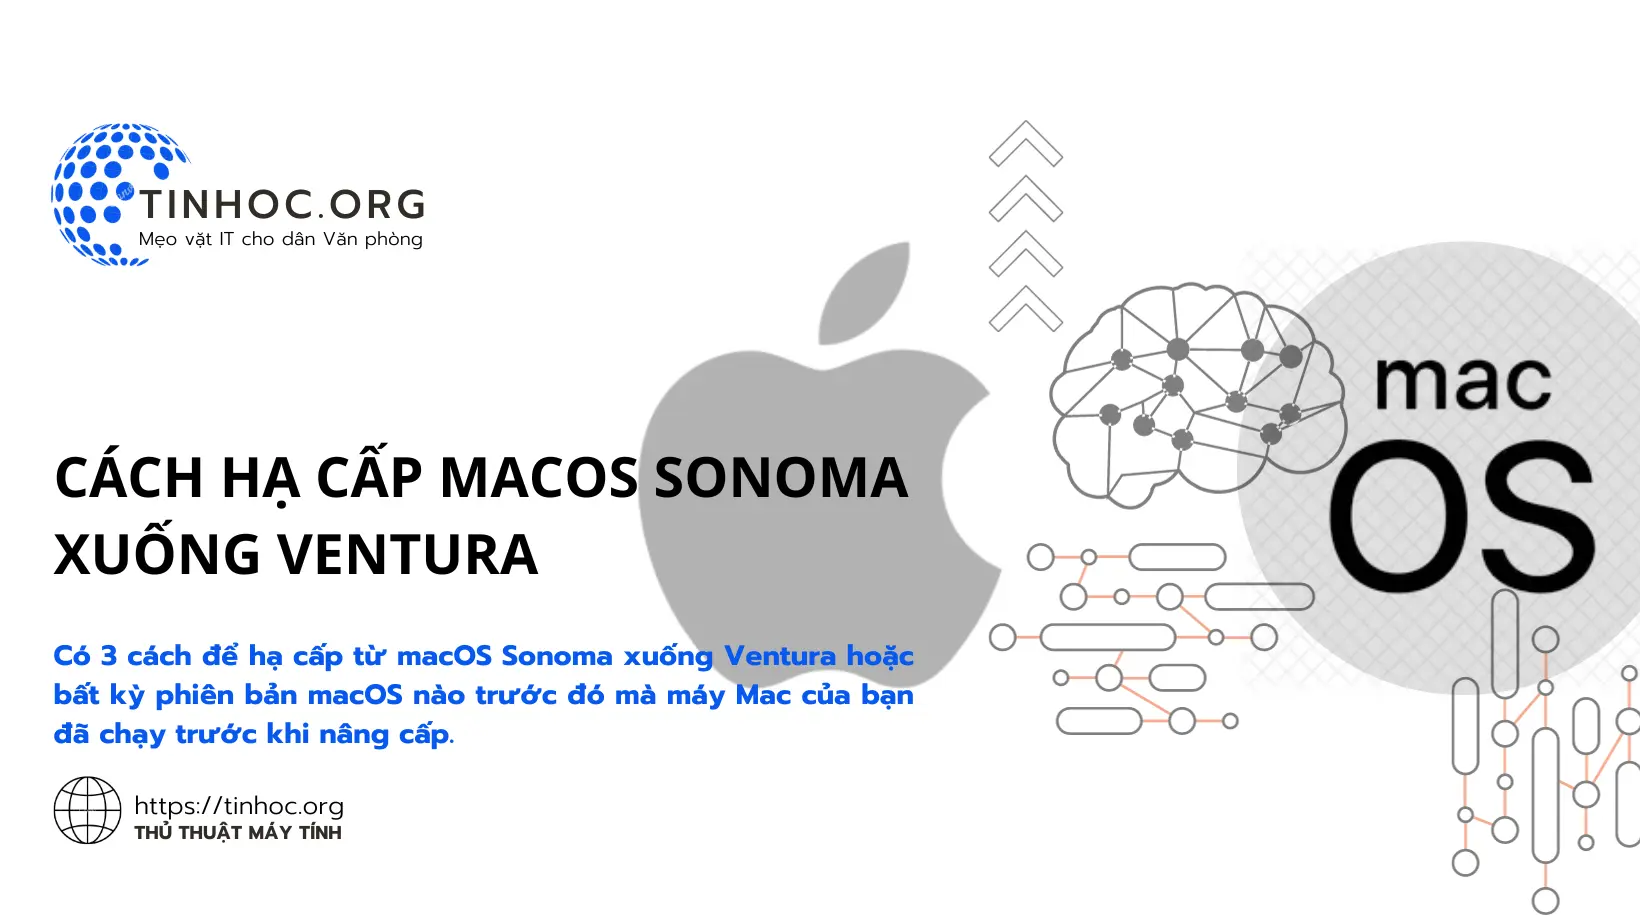 Có 3 cách để hạ cấp từ macOS Sonoma xuống Ventura hoặc bất kỳ phiên bản macOS nào trước đó mà máy Mac của bạn đã chạy trước khi nâng cấp.